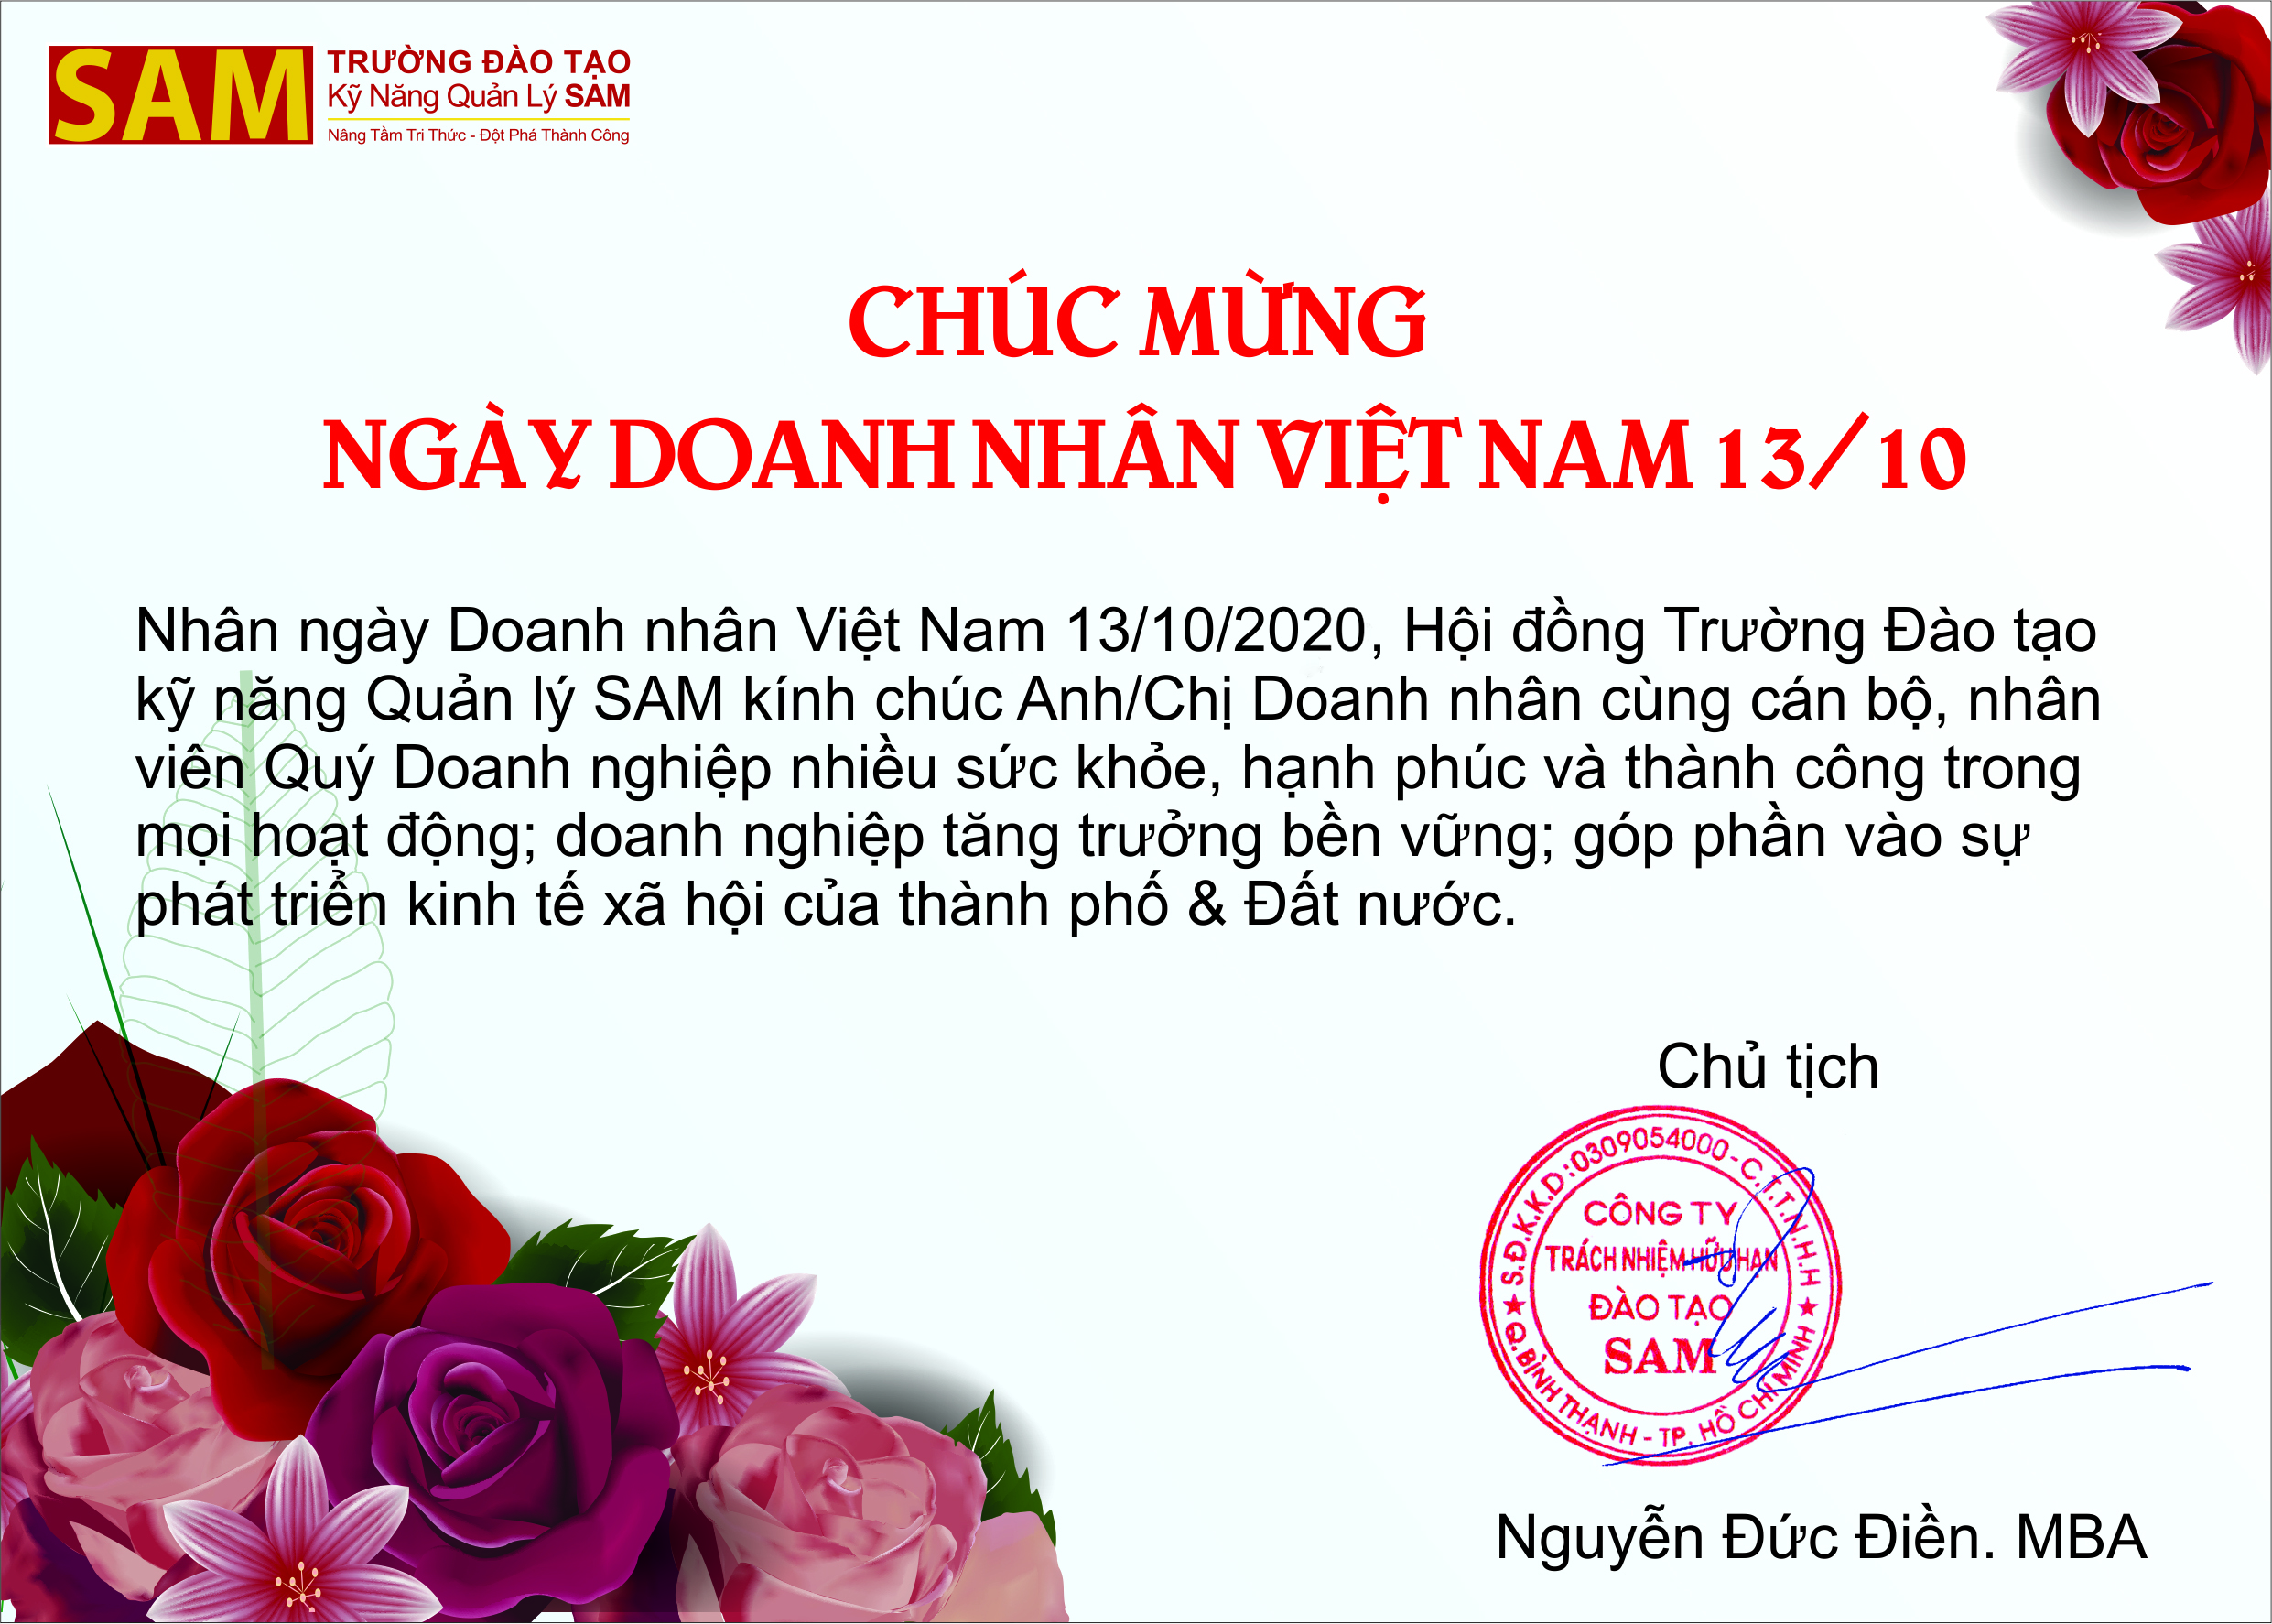 Chúc mừng ngày Doanh nhân Việt Nam - 13/10/2020